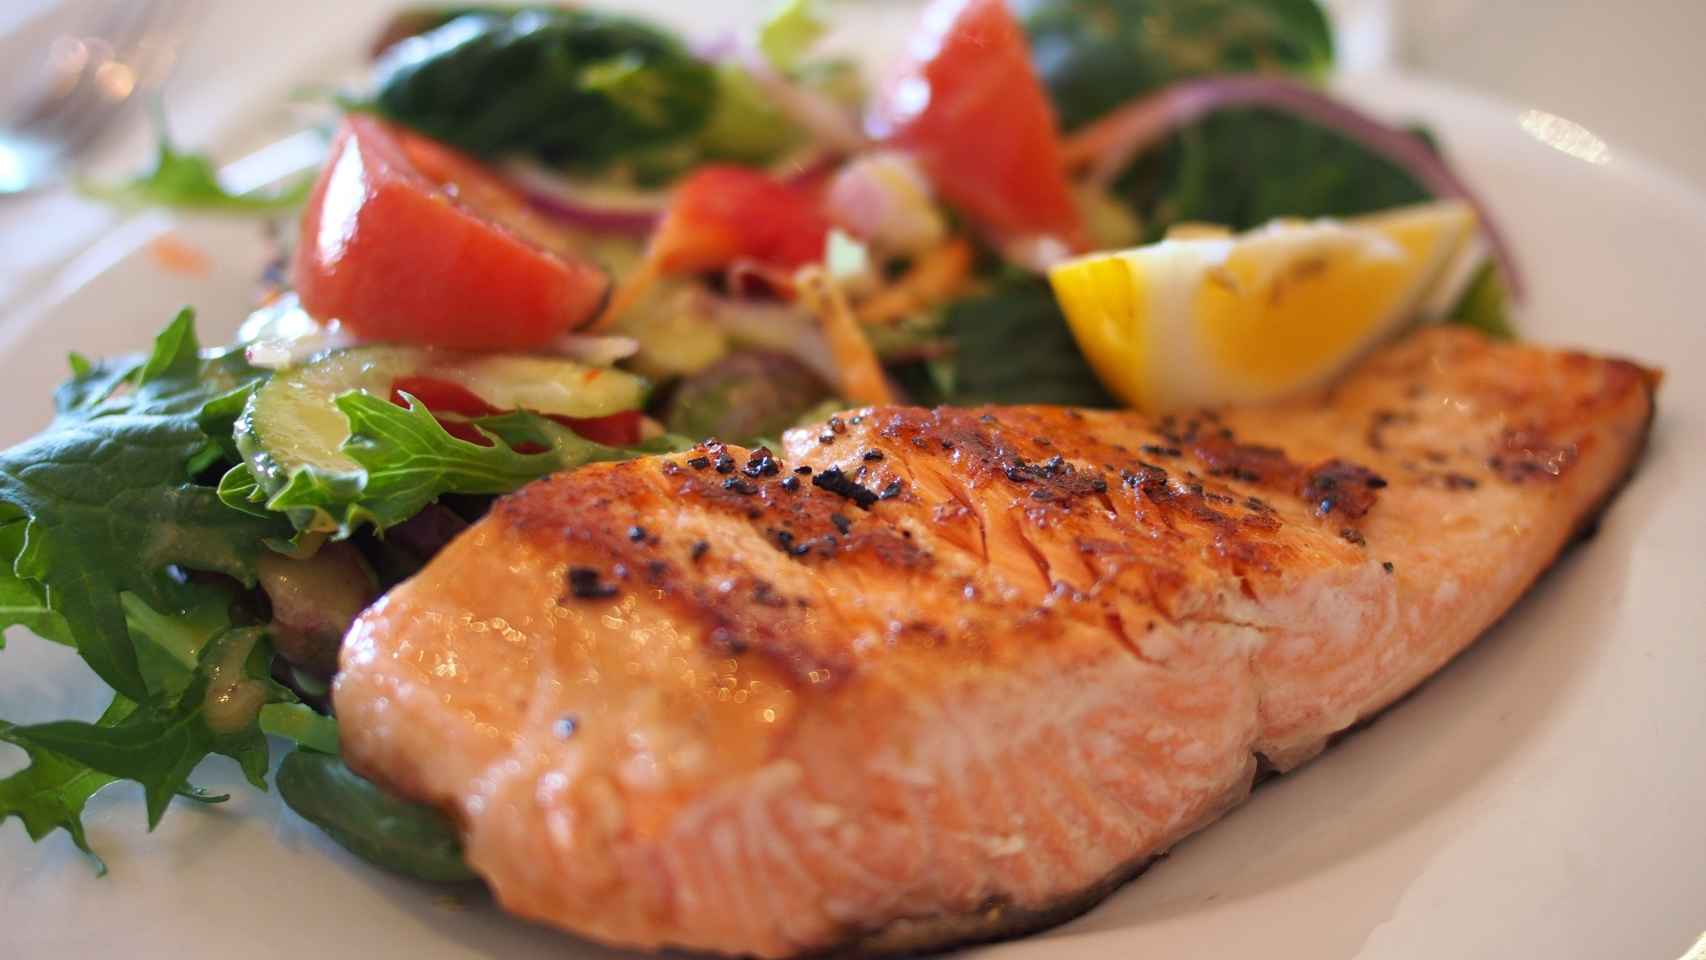 La grasa juega un papel fundamental en nuestro organismo, en especial las insaturadas, que pueden encontrarse, por ejemplo, en el pescado azul.